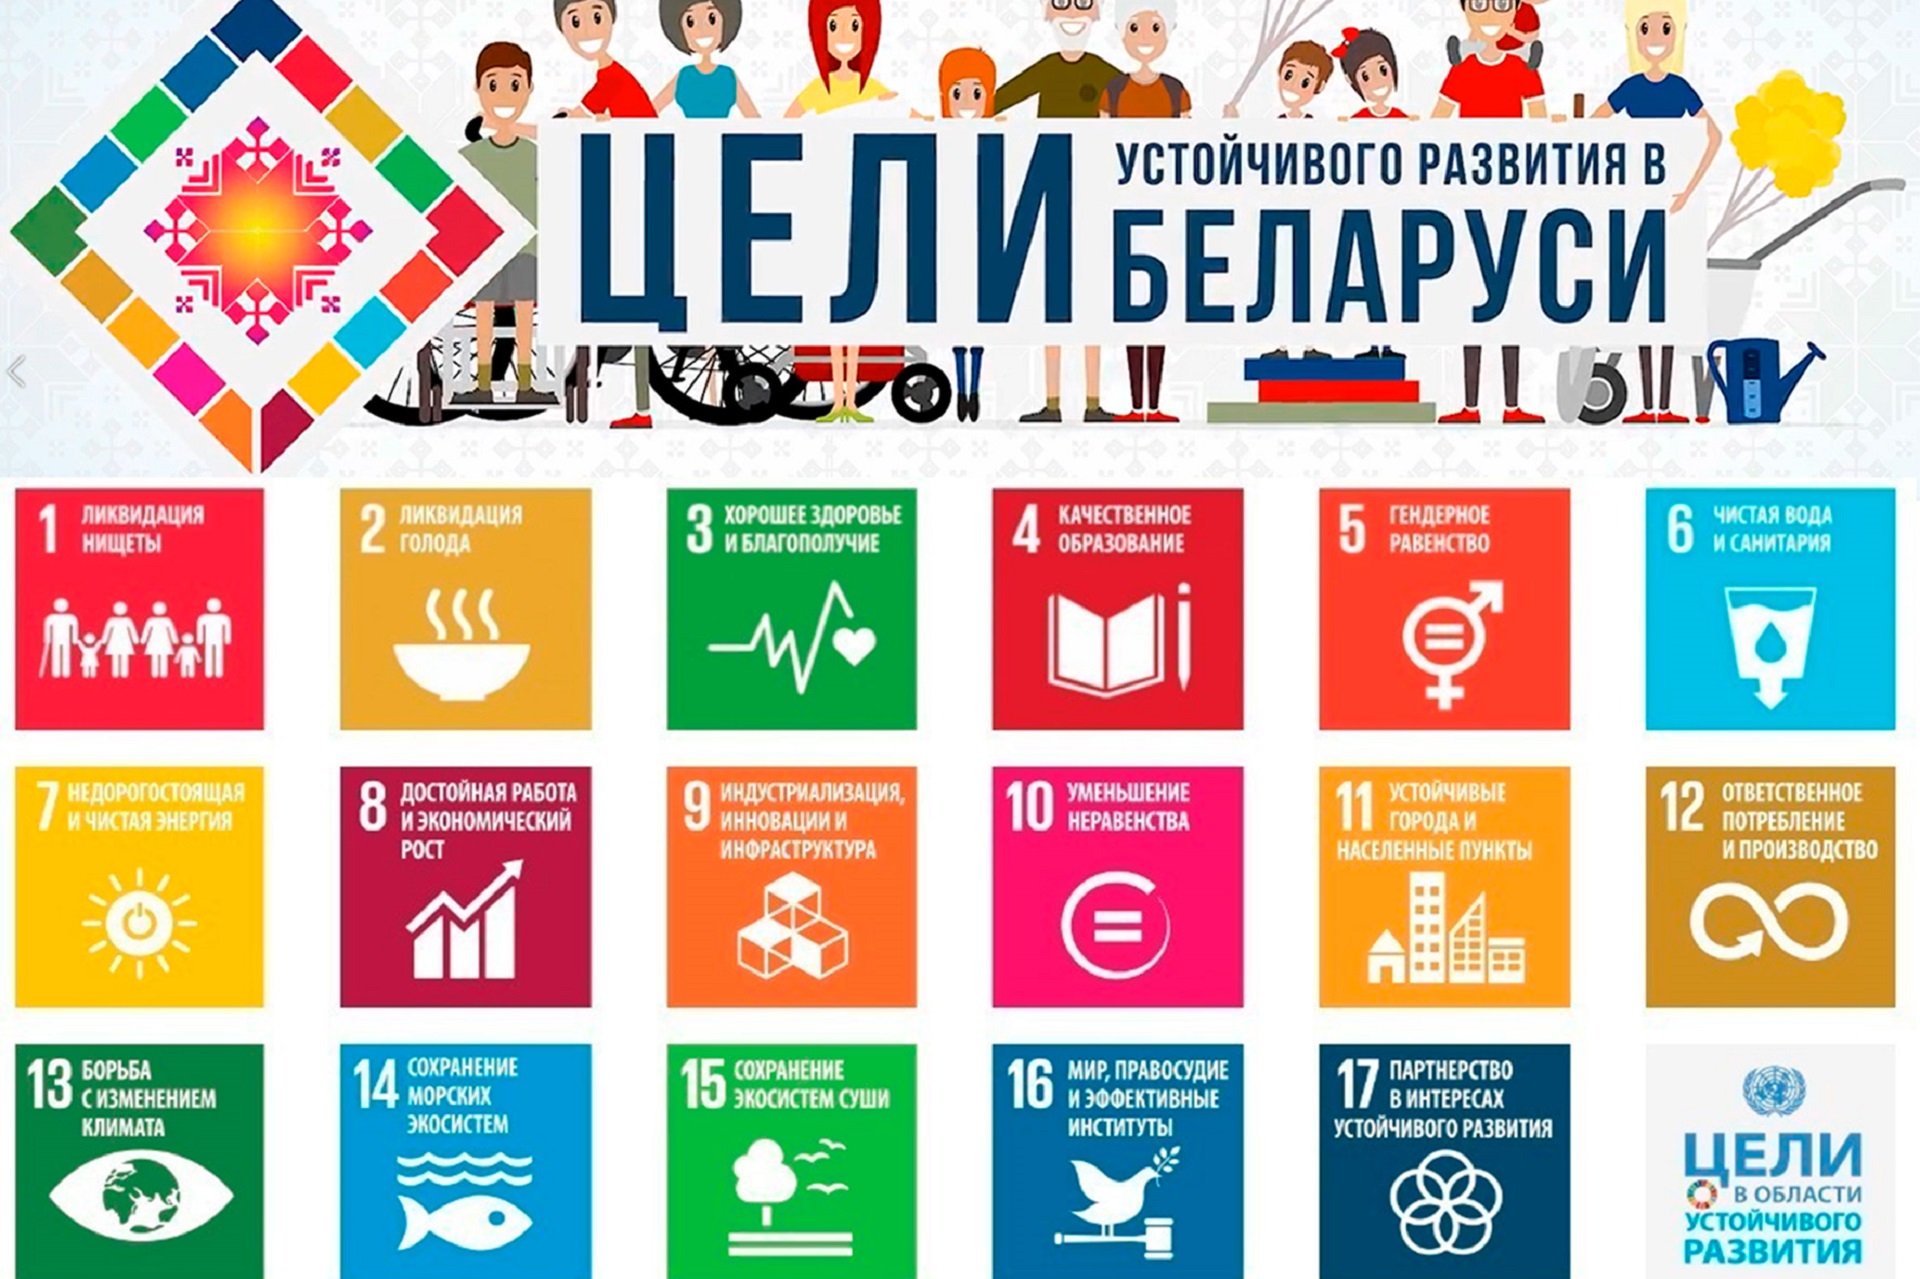 17 устойчивых целей оон. 17 Целей устойчивого развития ООН. Цели устойчивого развития ООН 2015-2030. Цели устойчивого развития на период до 2030 года Беларусь. Цели устойчивого развития ООН до 2030.